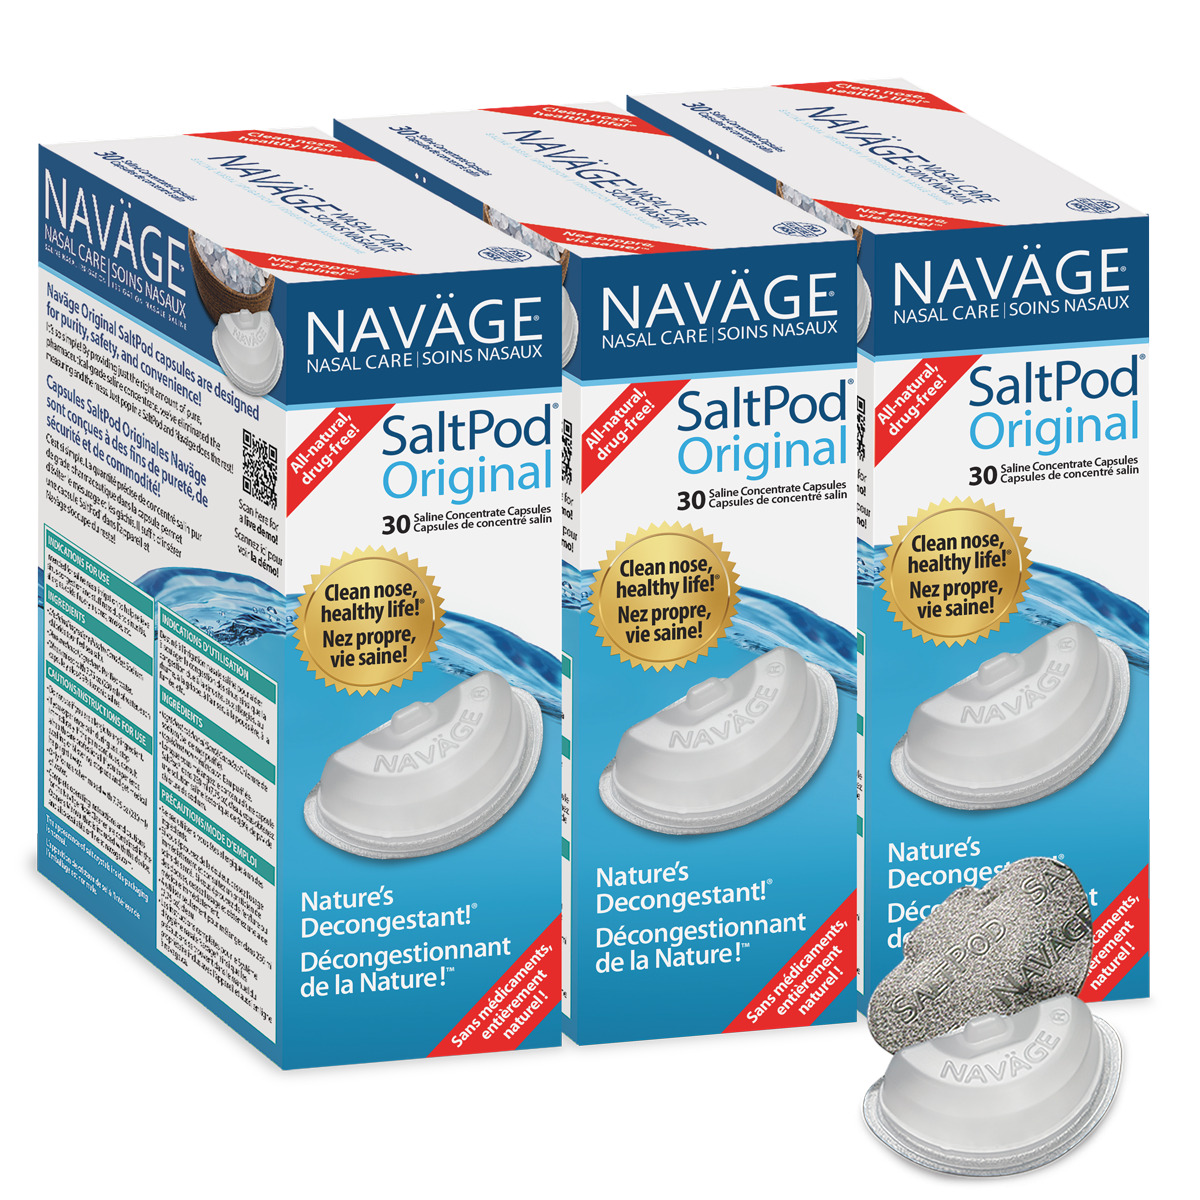 NAVAGE ORIGINAL SALTPOD® THREE-PACK: 3 Original SaltPod 30-Packs (90 SaltPods) 